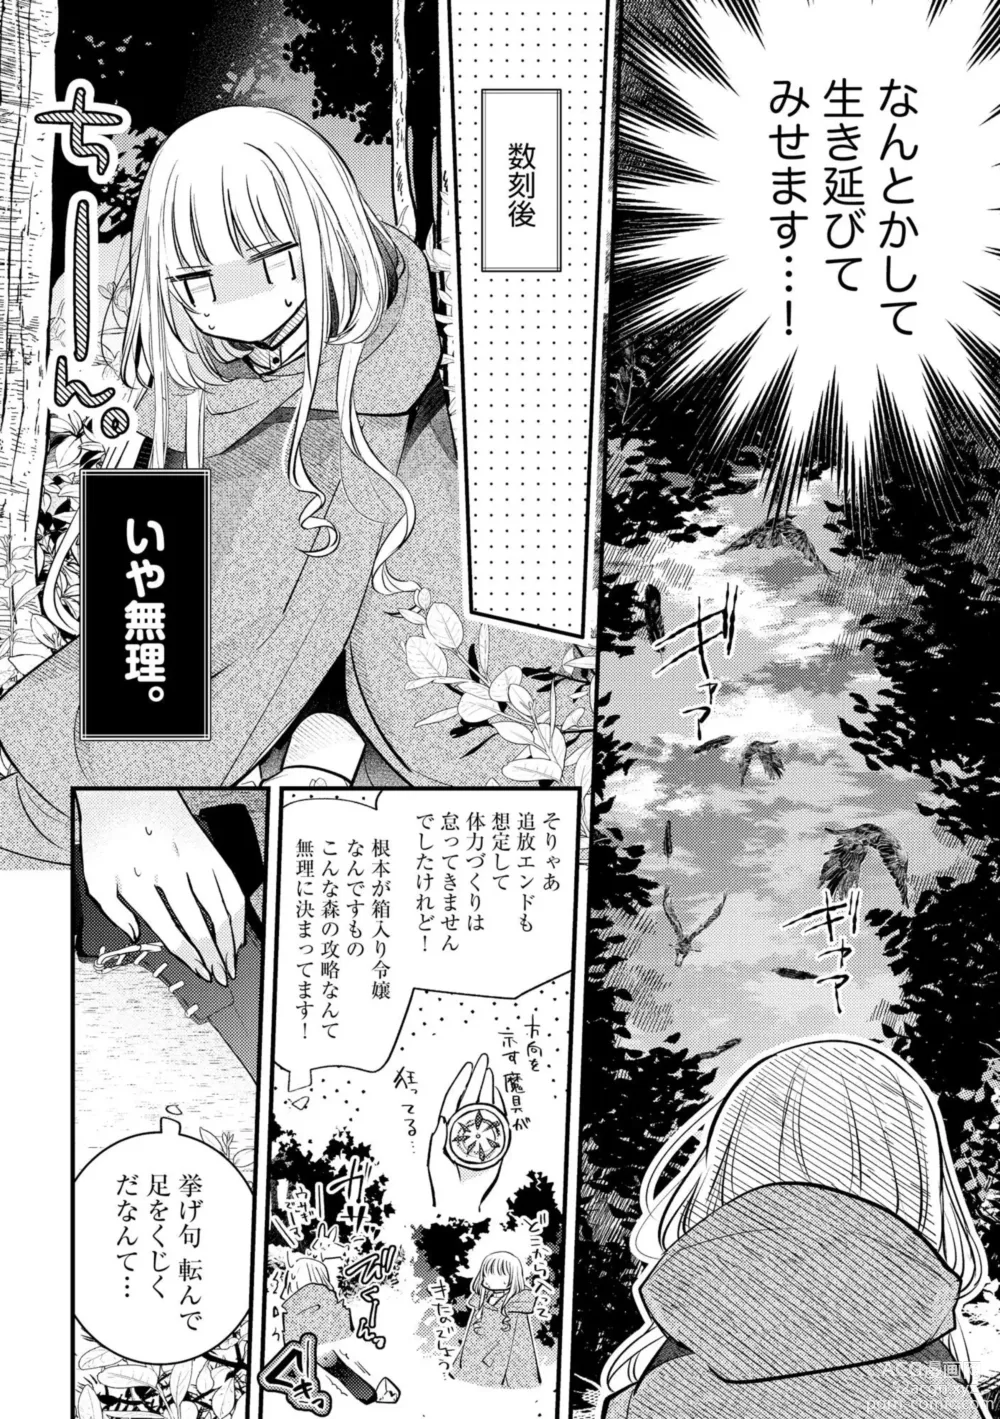 Page 14 of manga Akuyaku Reijou to Kyuuketsu Ouji no Dekiai Keiyaku Bad End ￫ Kenzoku Route no Amai Yotogi 1